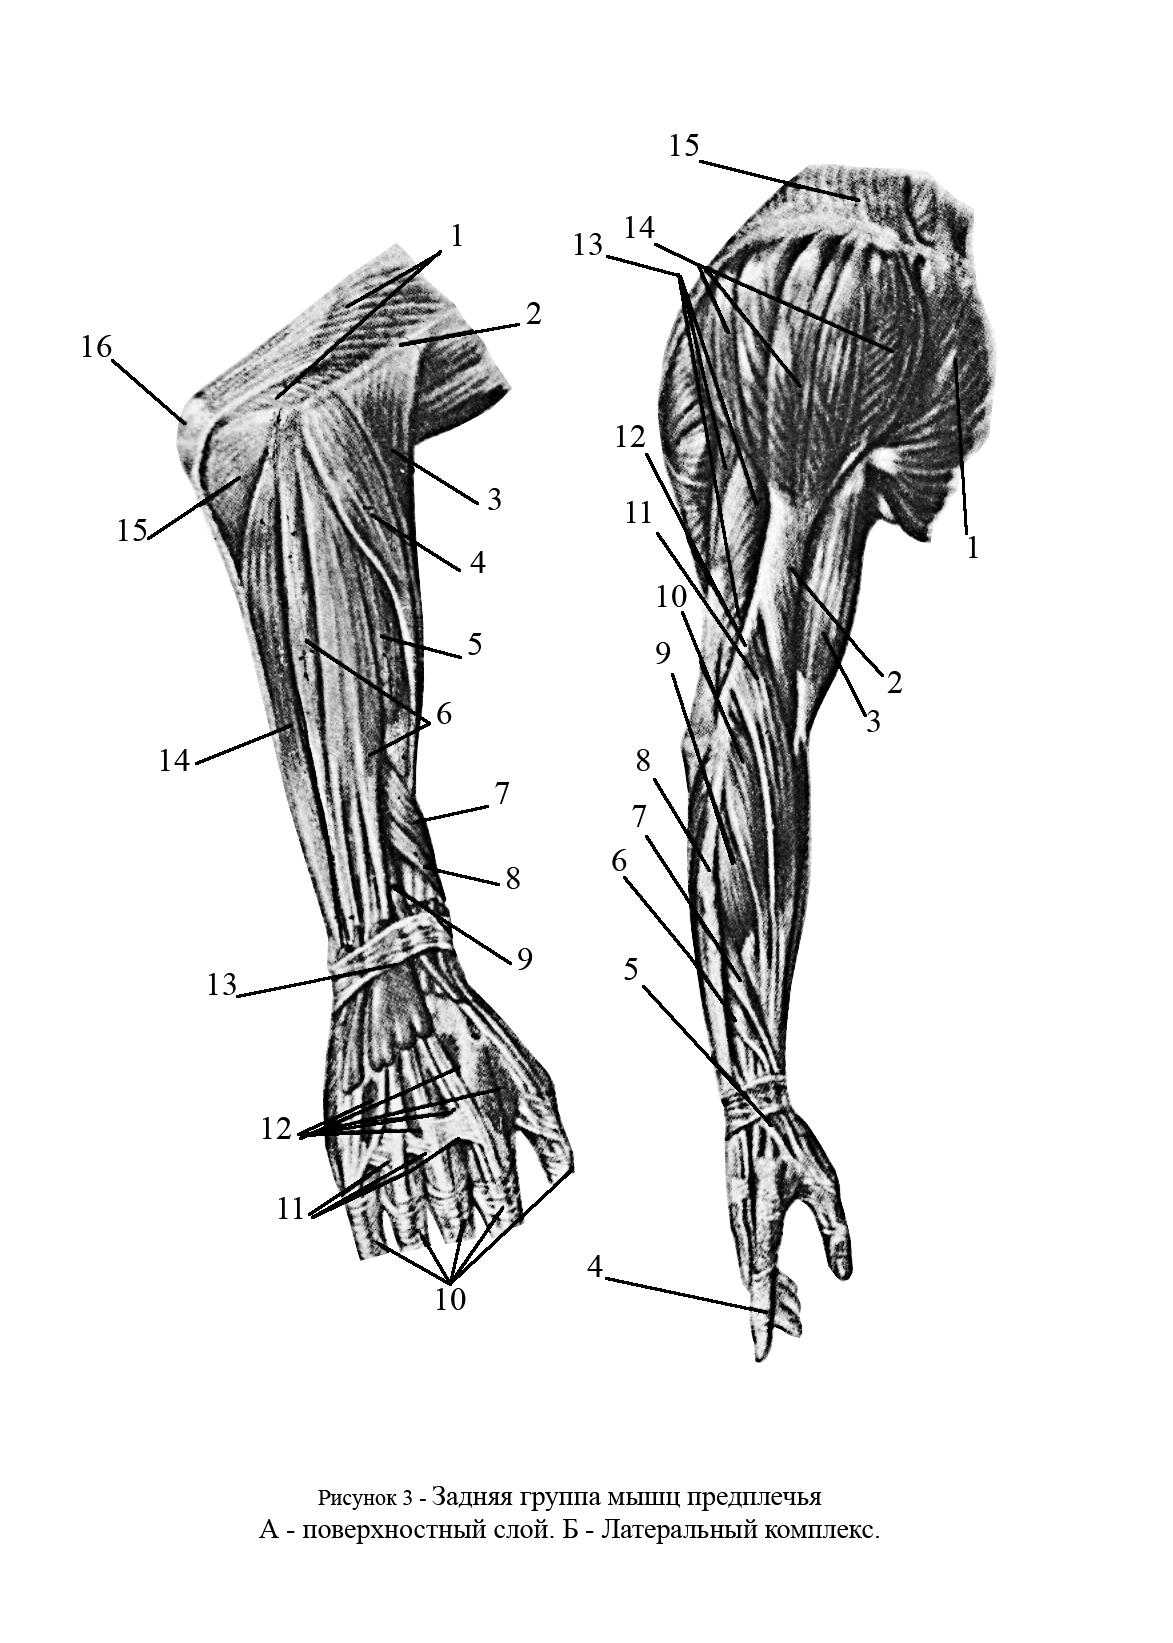 Мышцы предплечья и их функции. анатомия мышц плеча и предплечья